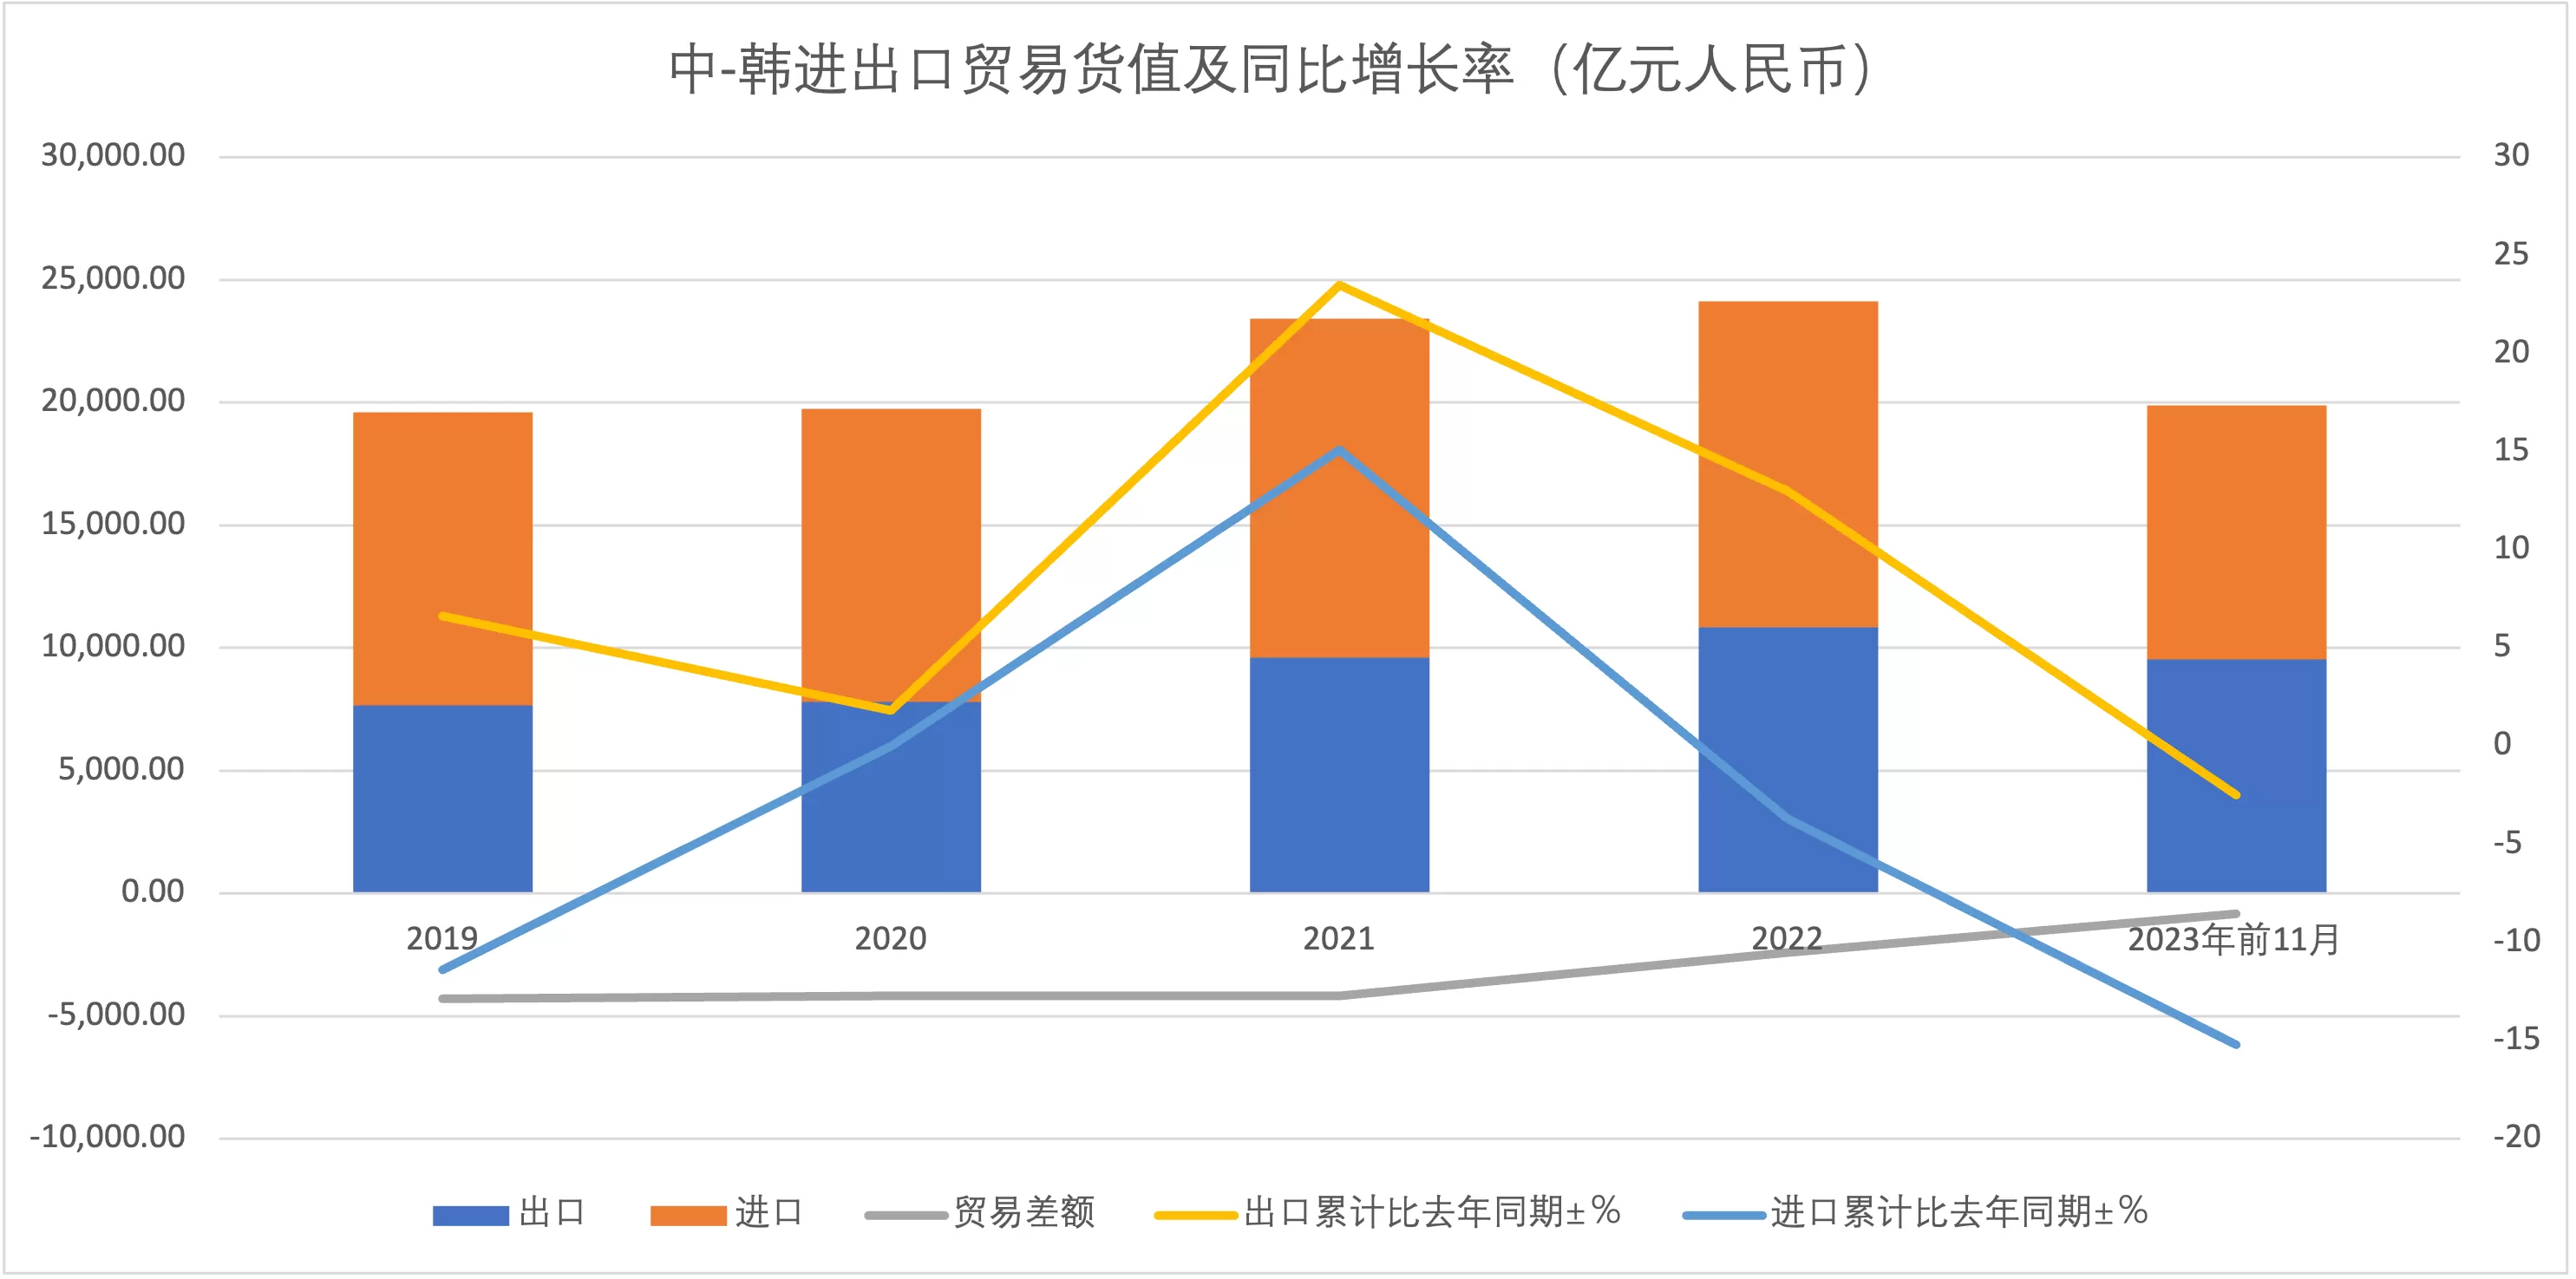 中国与韩国进出口贸易货值及同比增长率